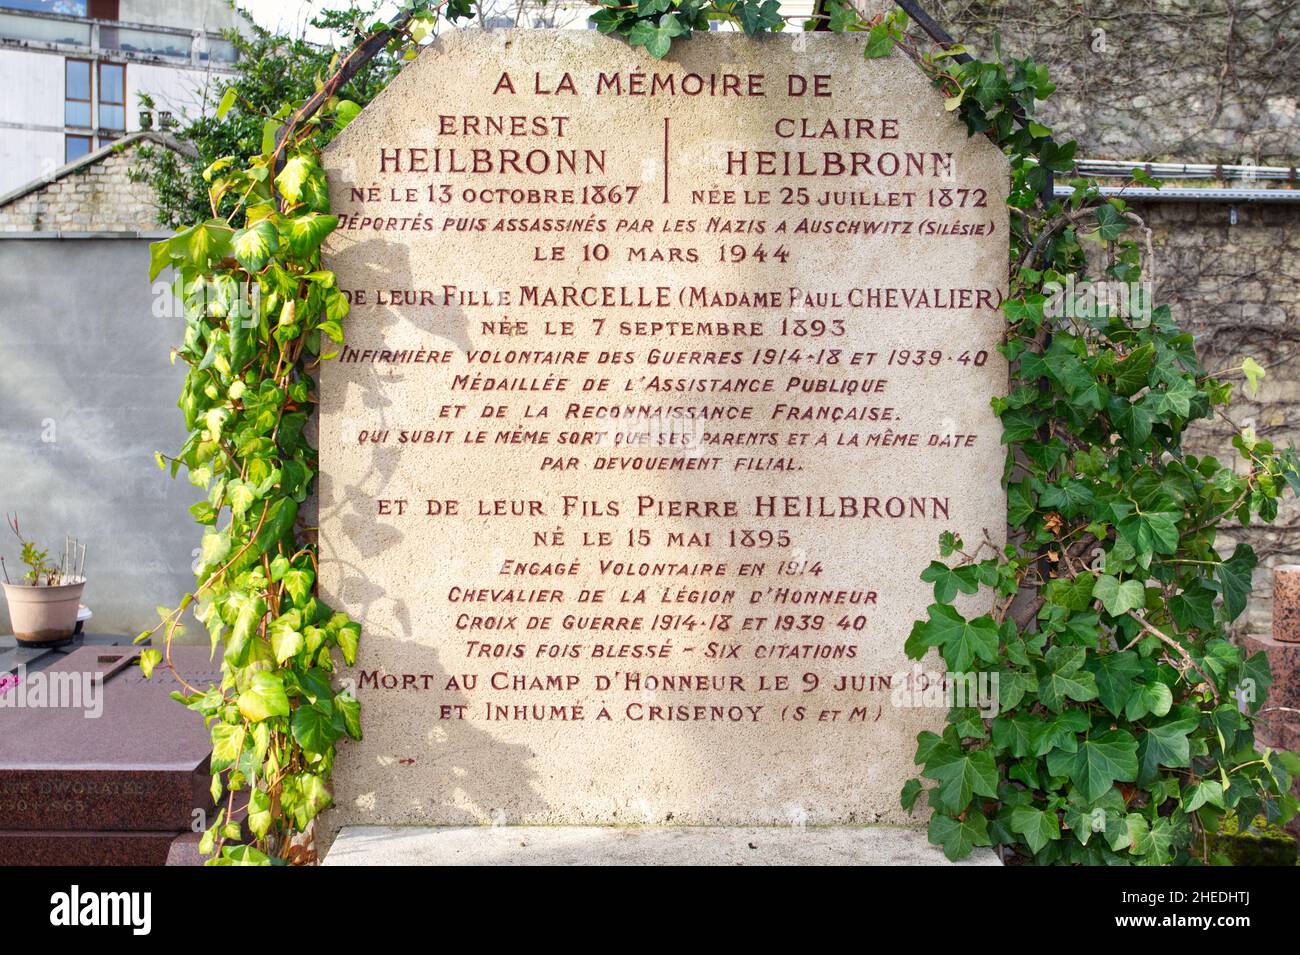 Leere Gräber: Eine Warnung an unser Gedächtnis - Cenotaph der Heilbronner Familie, die in Auschwitz getötet wurde - Shoah - nie vergessen - Friedhof Montparnasse - Paris Stockfoto